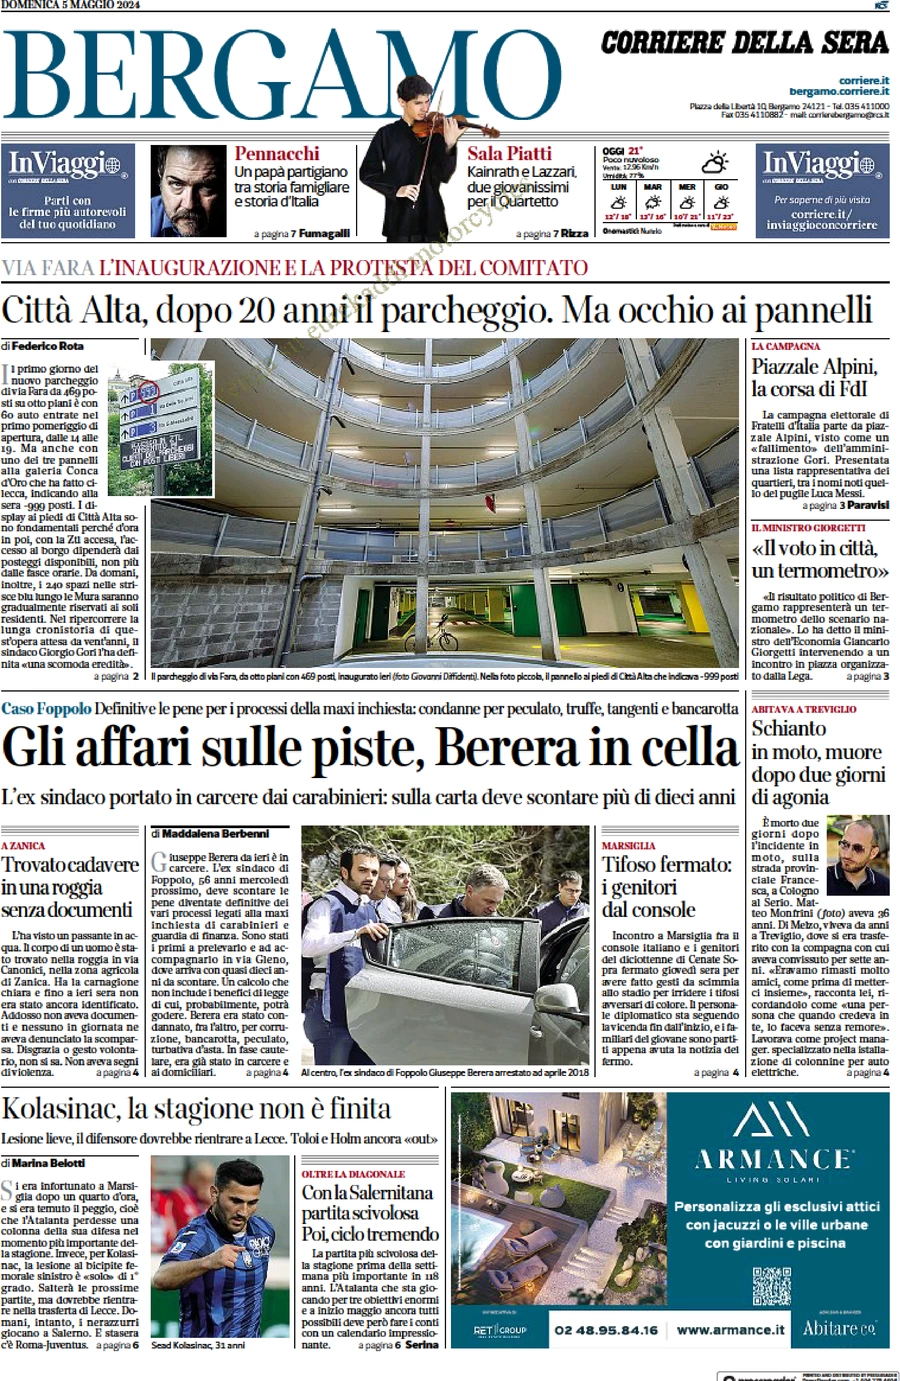 anteprima della prima pagina di Corriere della Sera (Bergamo)